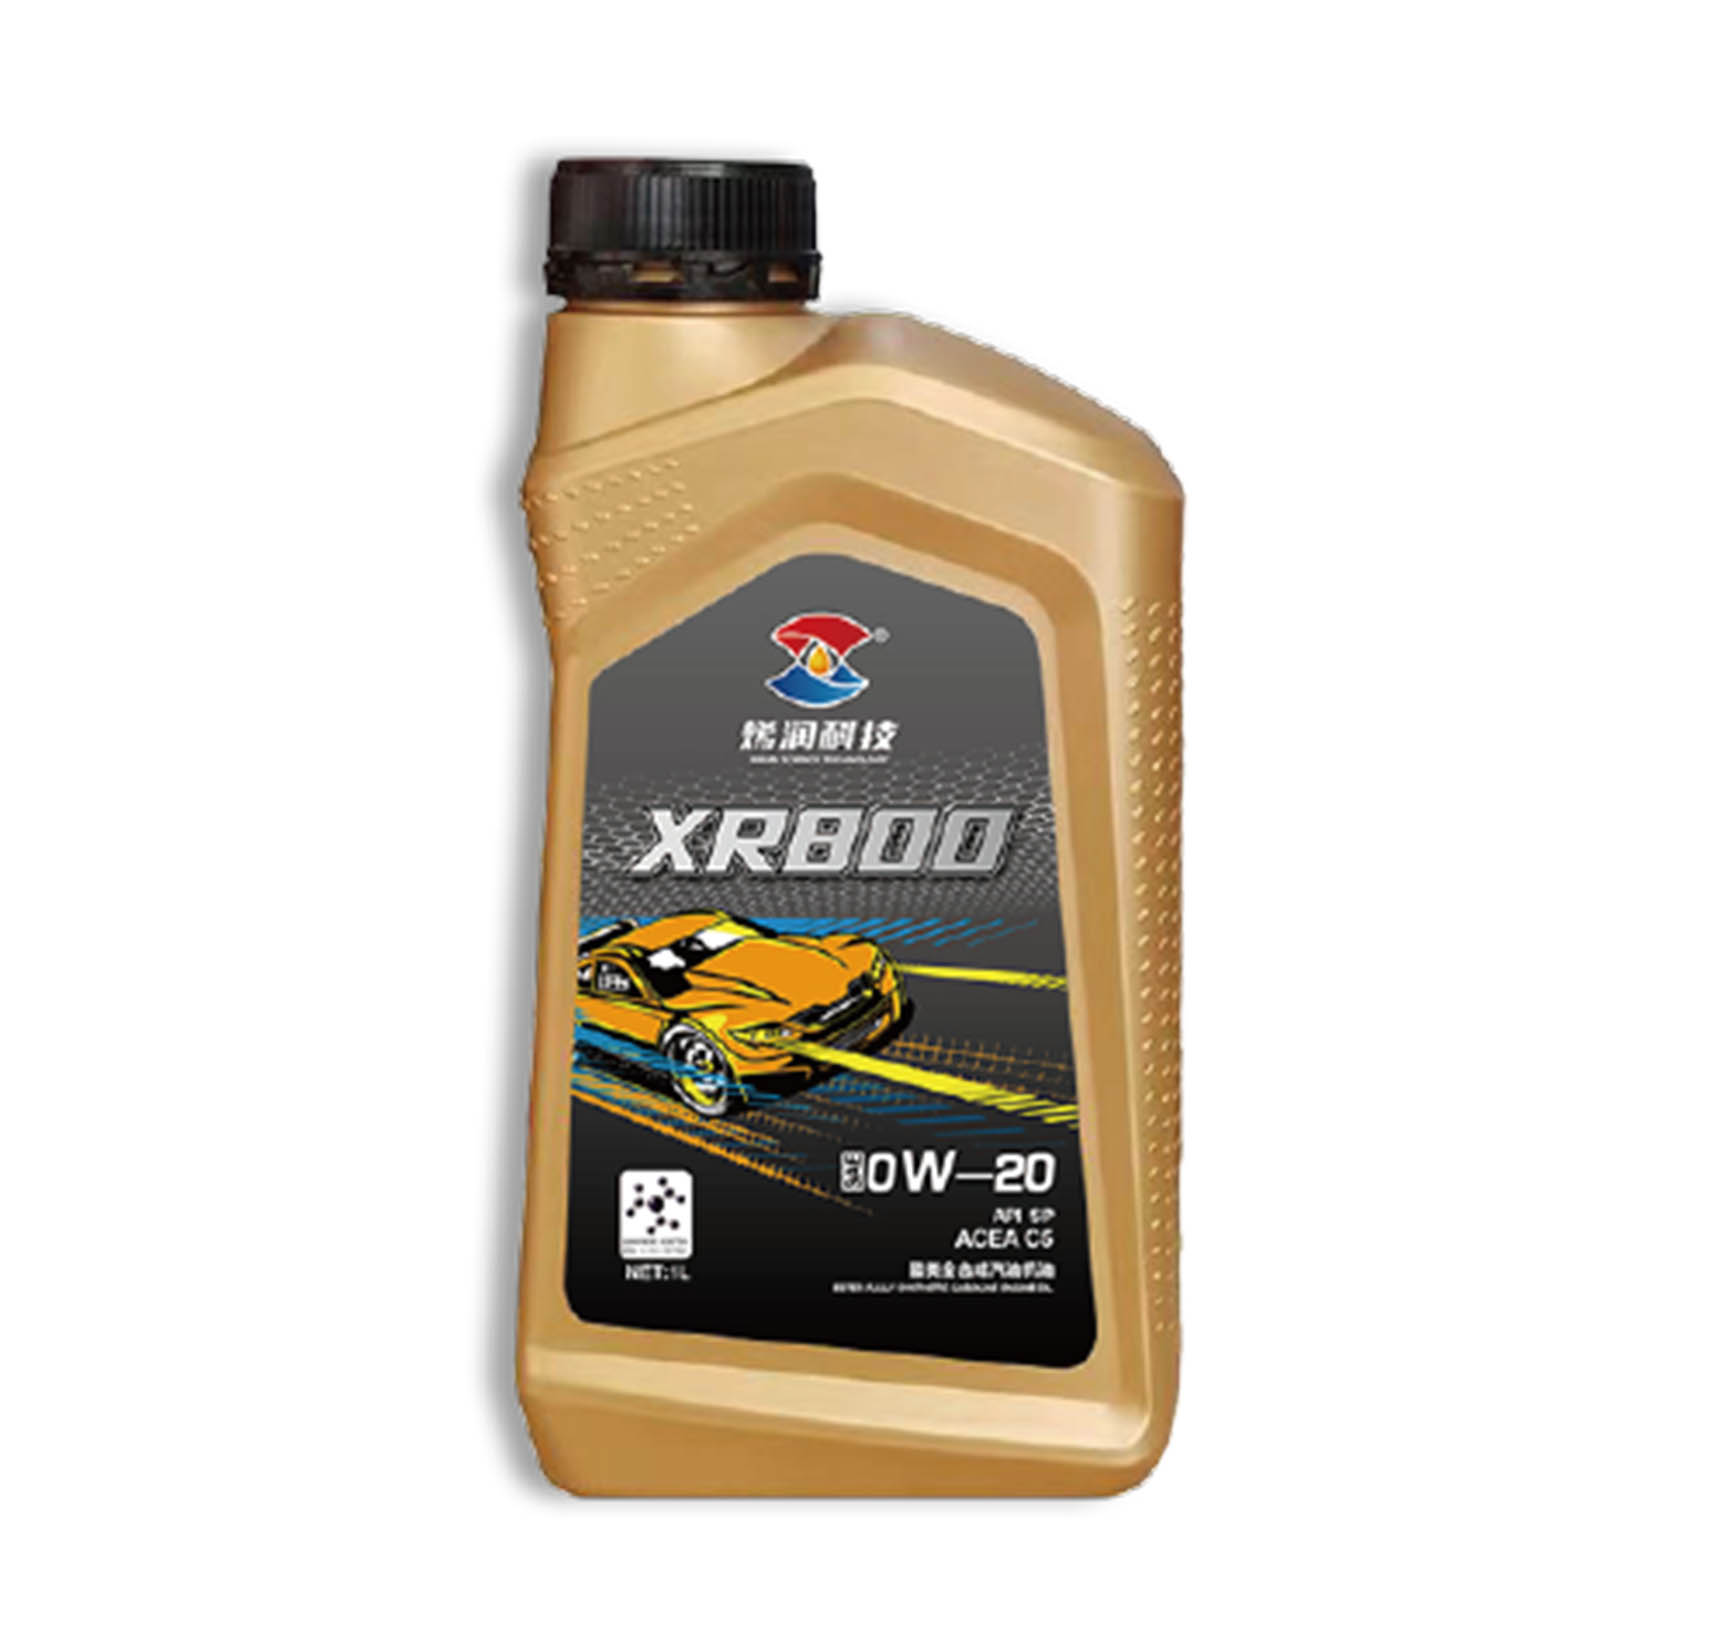 烯润润滑油XR800 0W-20